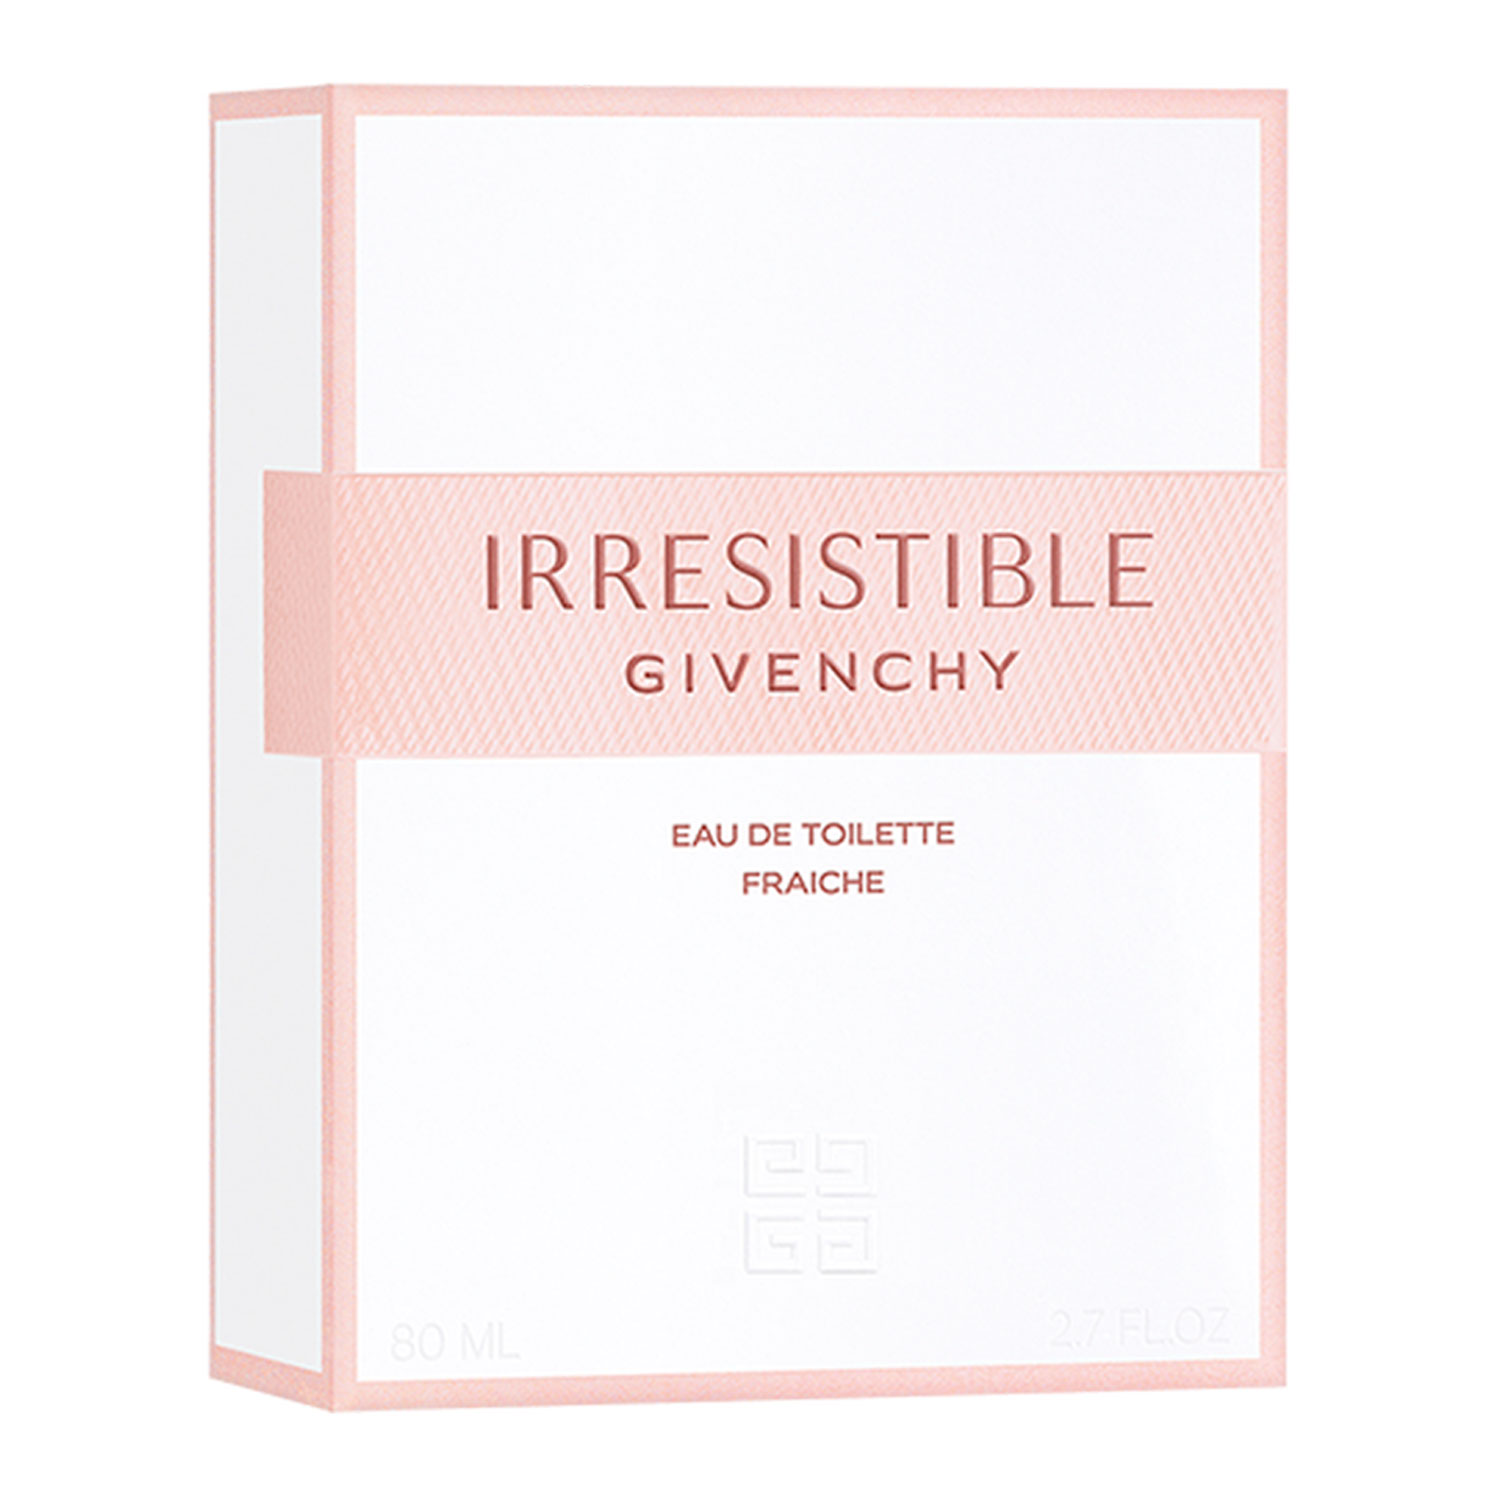 Perfume Givenchy Irresistible Fraiche Eau de Toilette Feminino 80ml